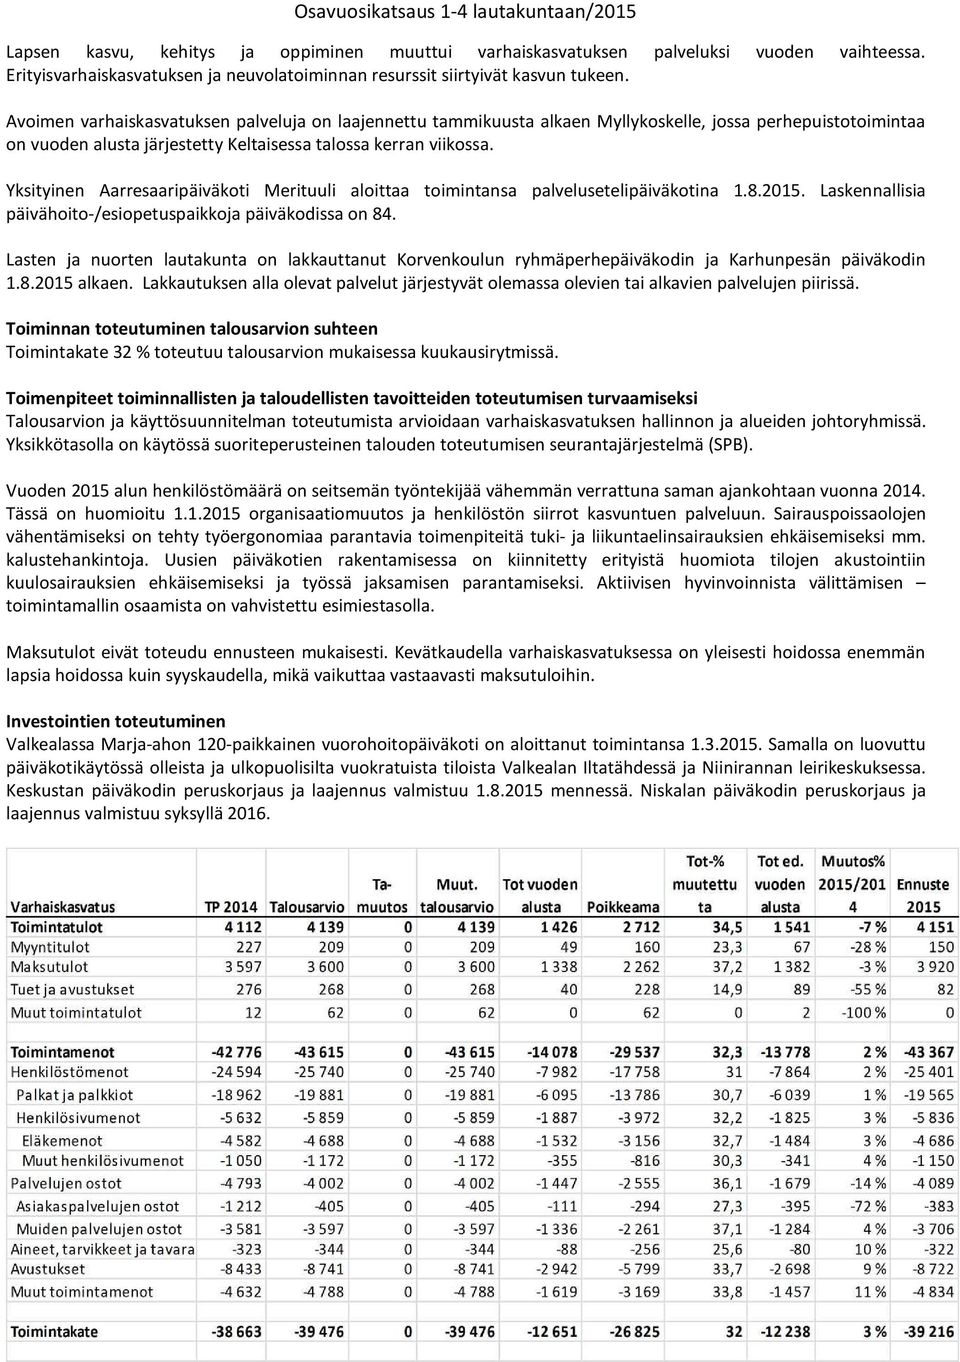 Yksityinen Aarresaaripäiväkti Merituuli alittaa timintansa palvelusetelipäiväktina 1.8.2015. Laskennallisia päivähit-/esipetuspaikkja päiväkdissa n 84.